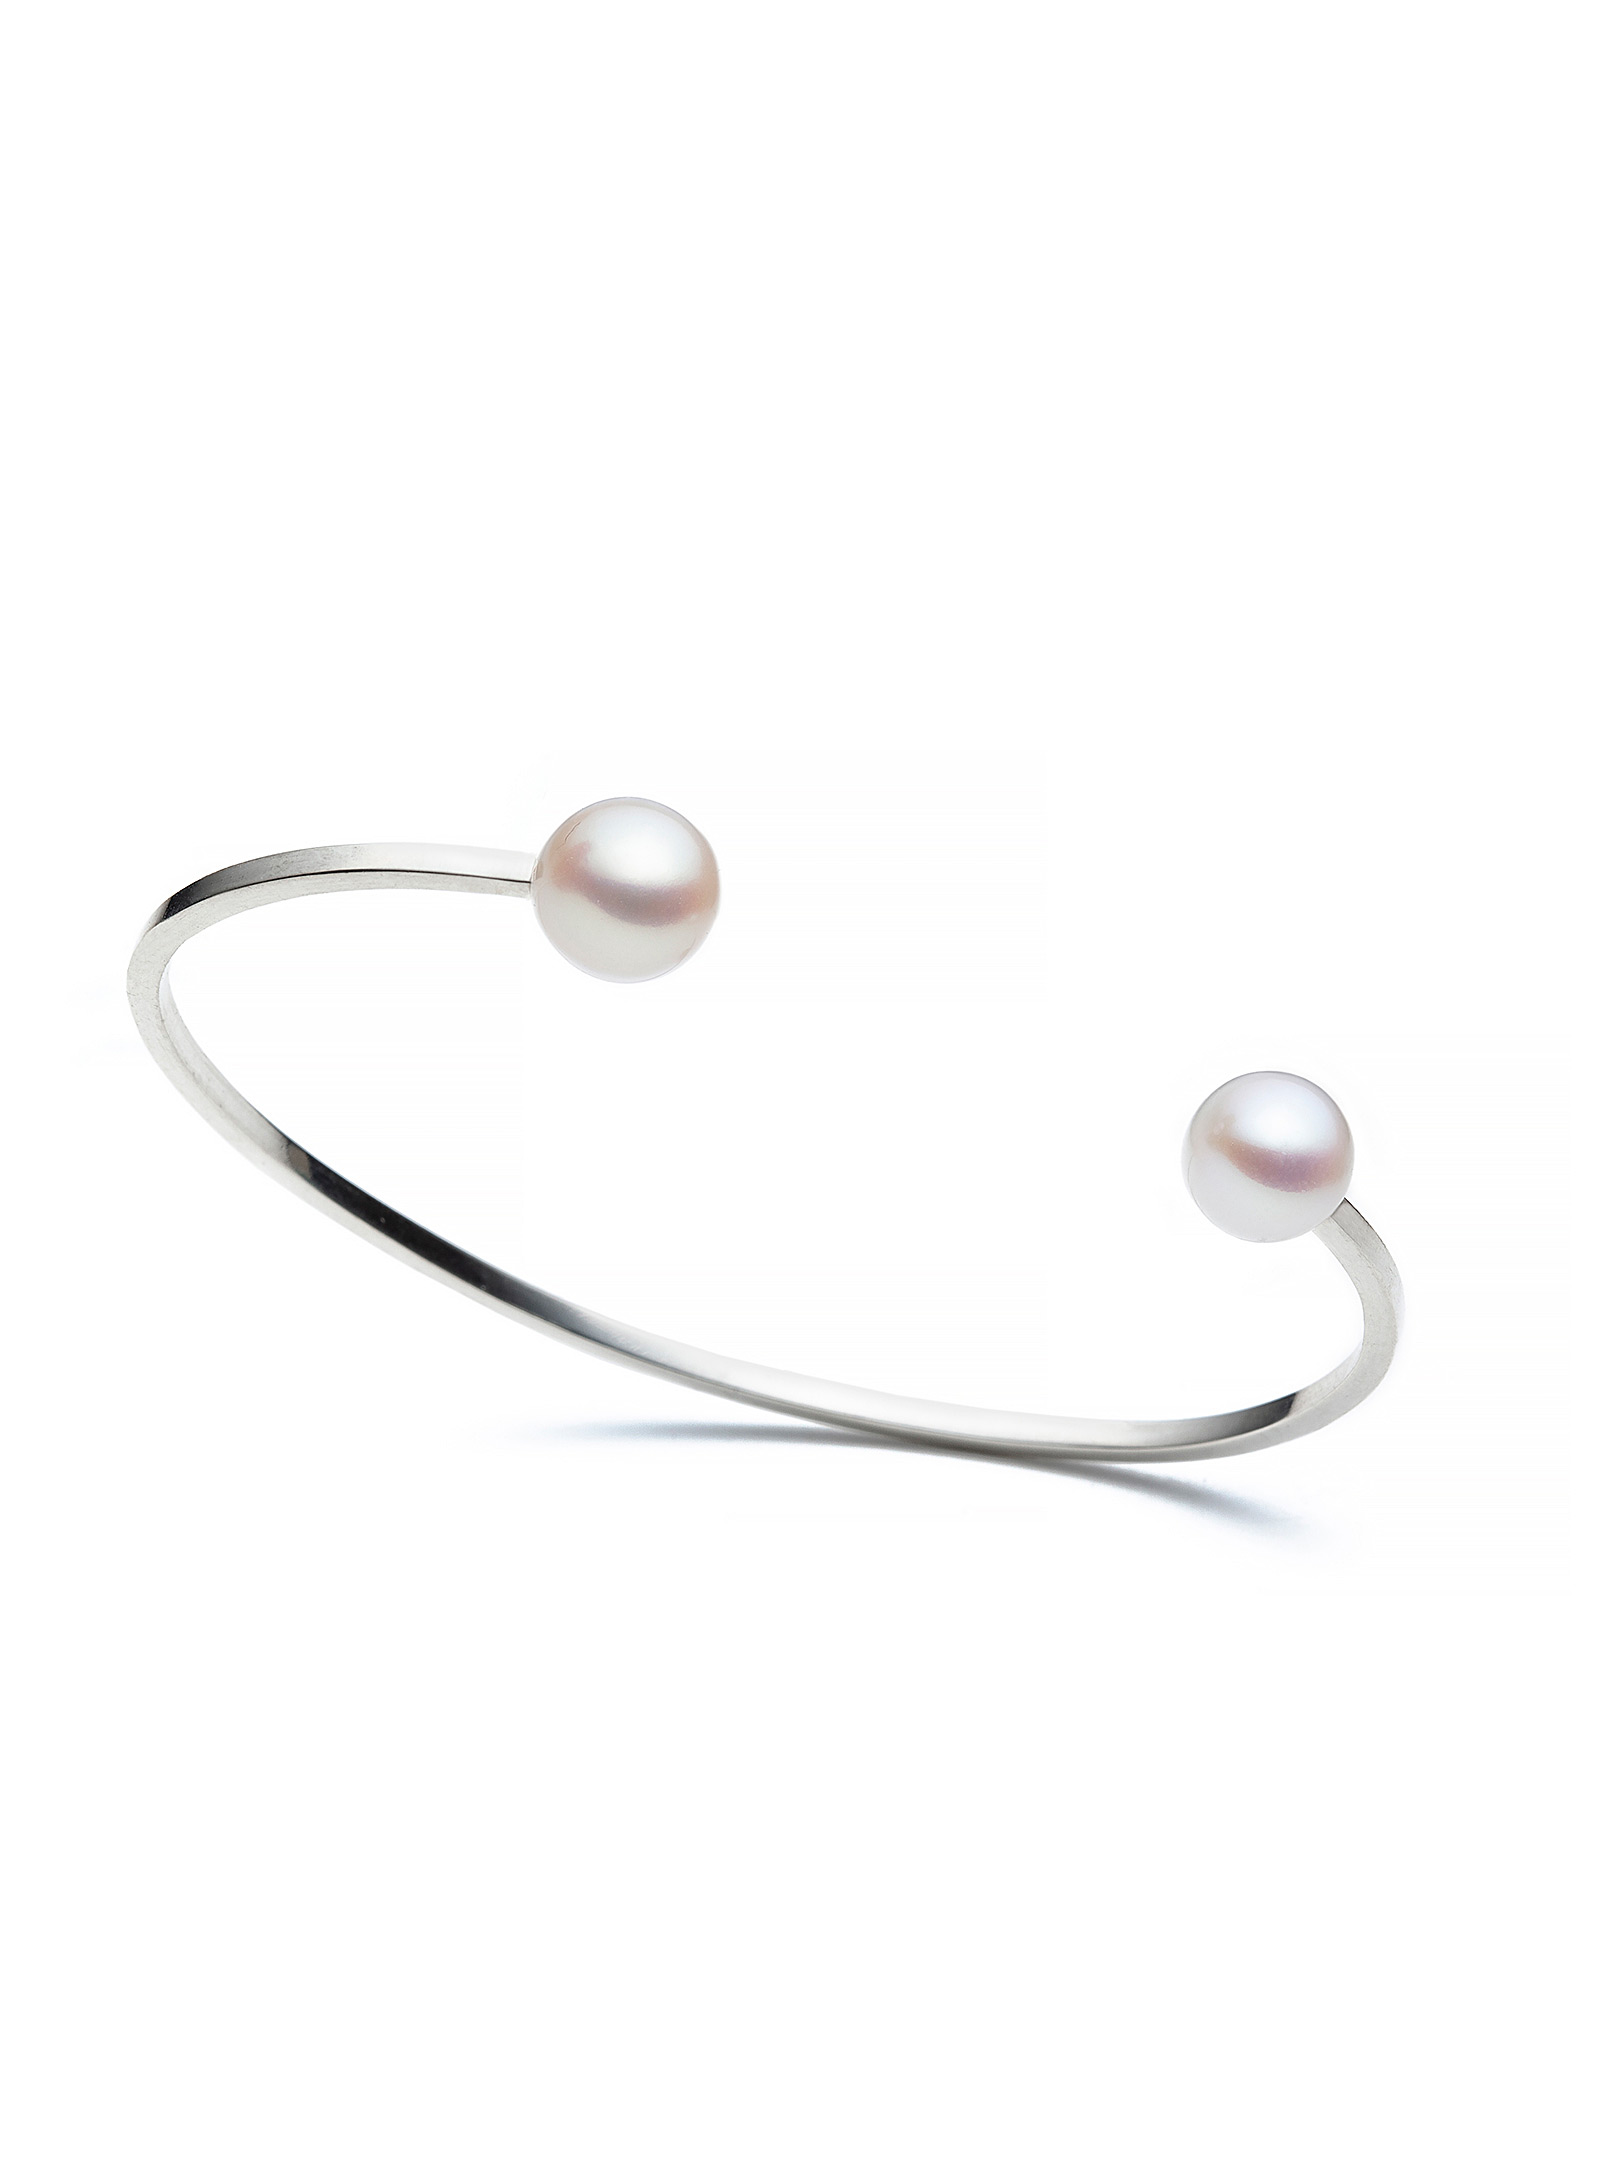 Atelier LAF - Le bracelet manchettes perles